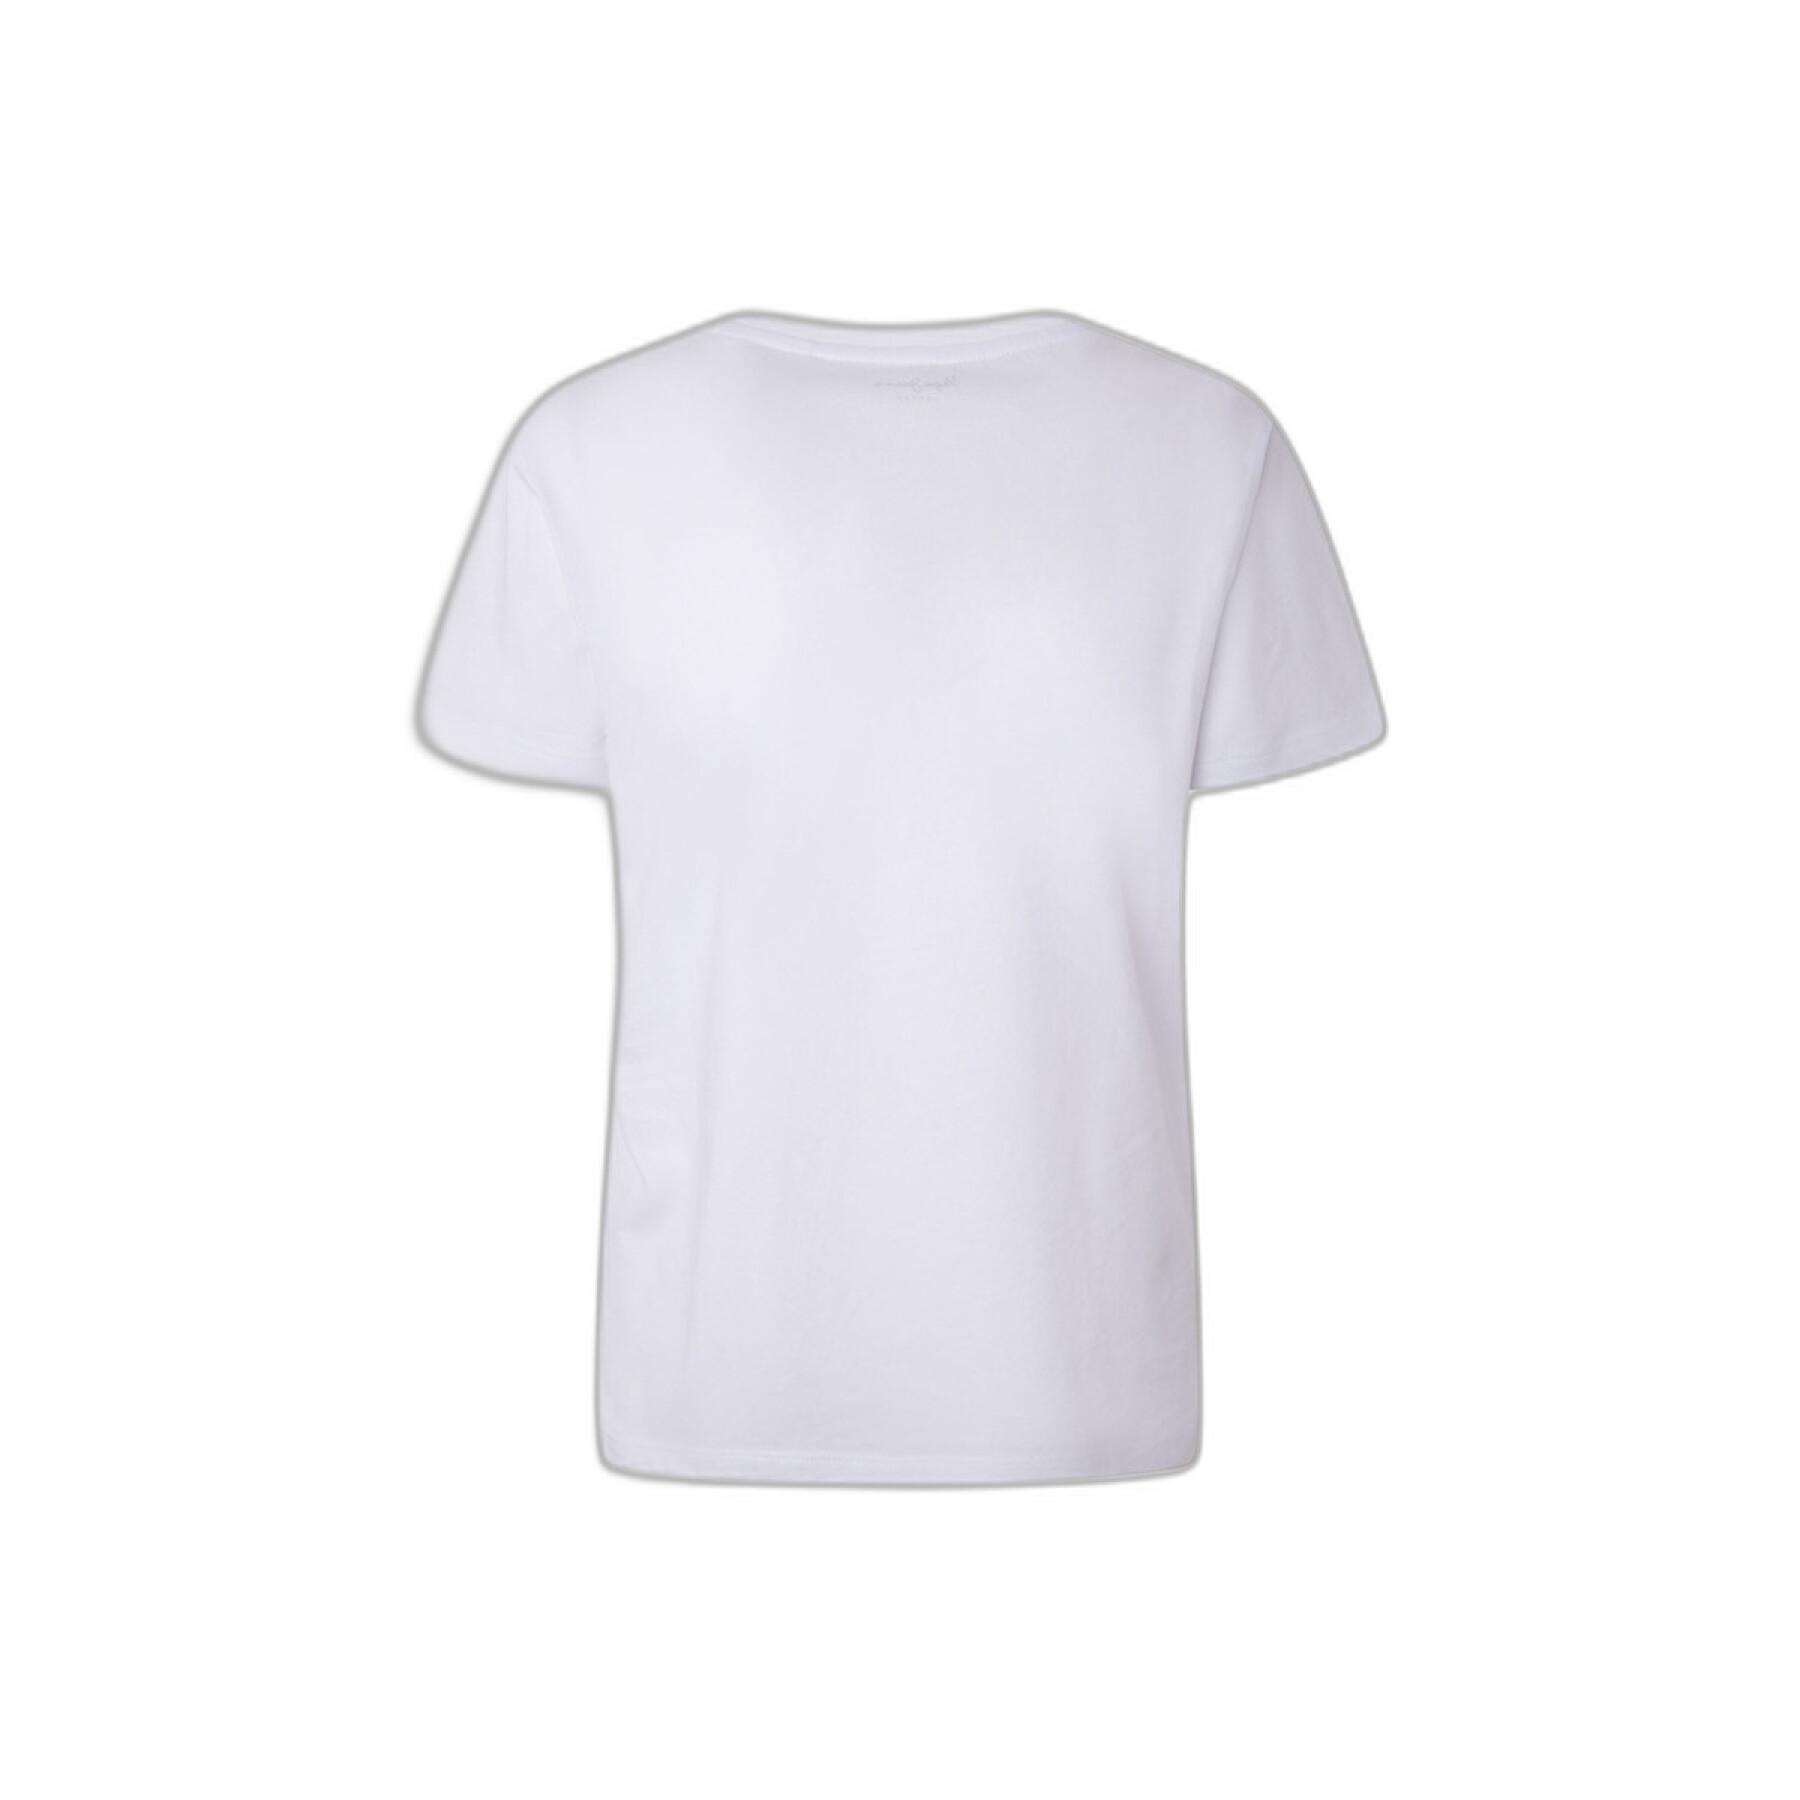 Women's T-shirt Pepe Jeans Lali - T-shirts & Tank Tops - Clothing - Women